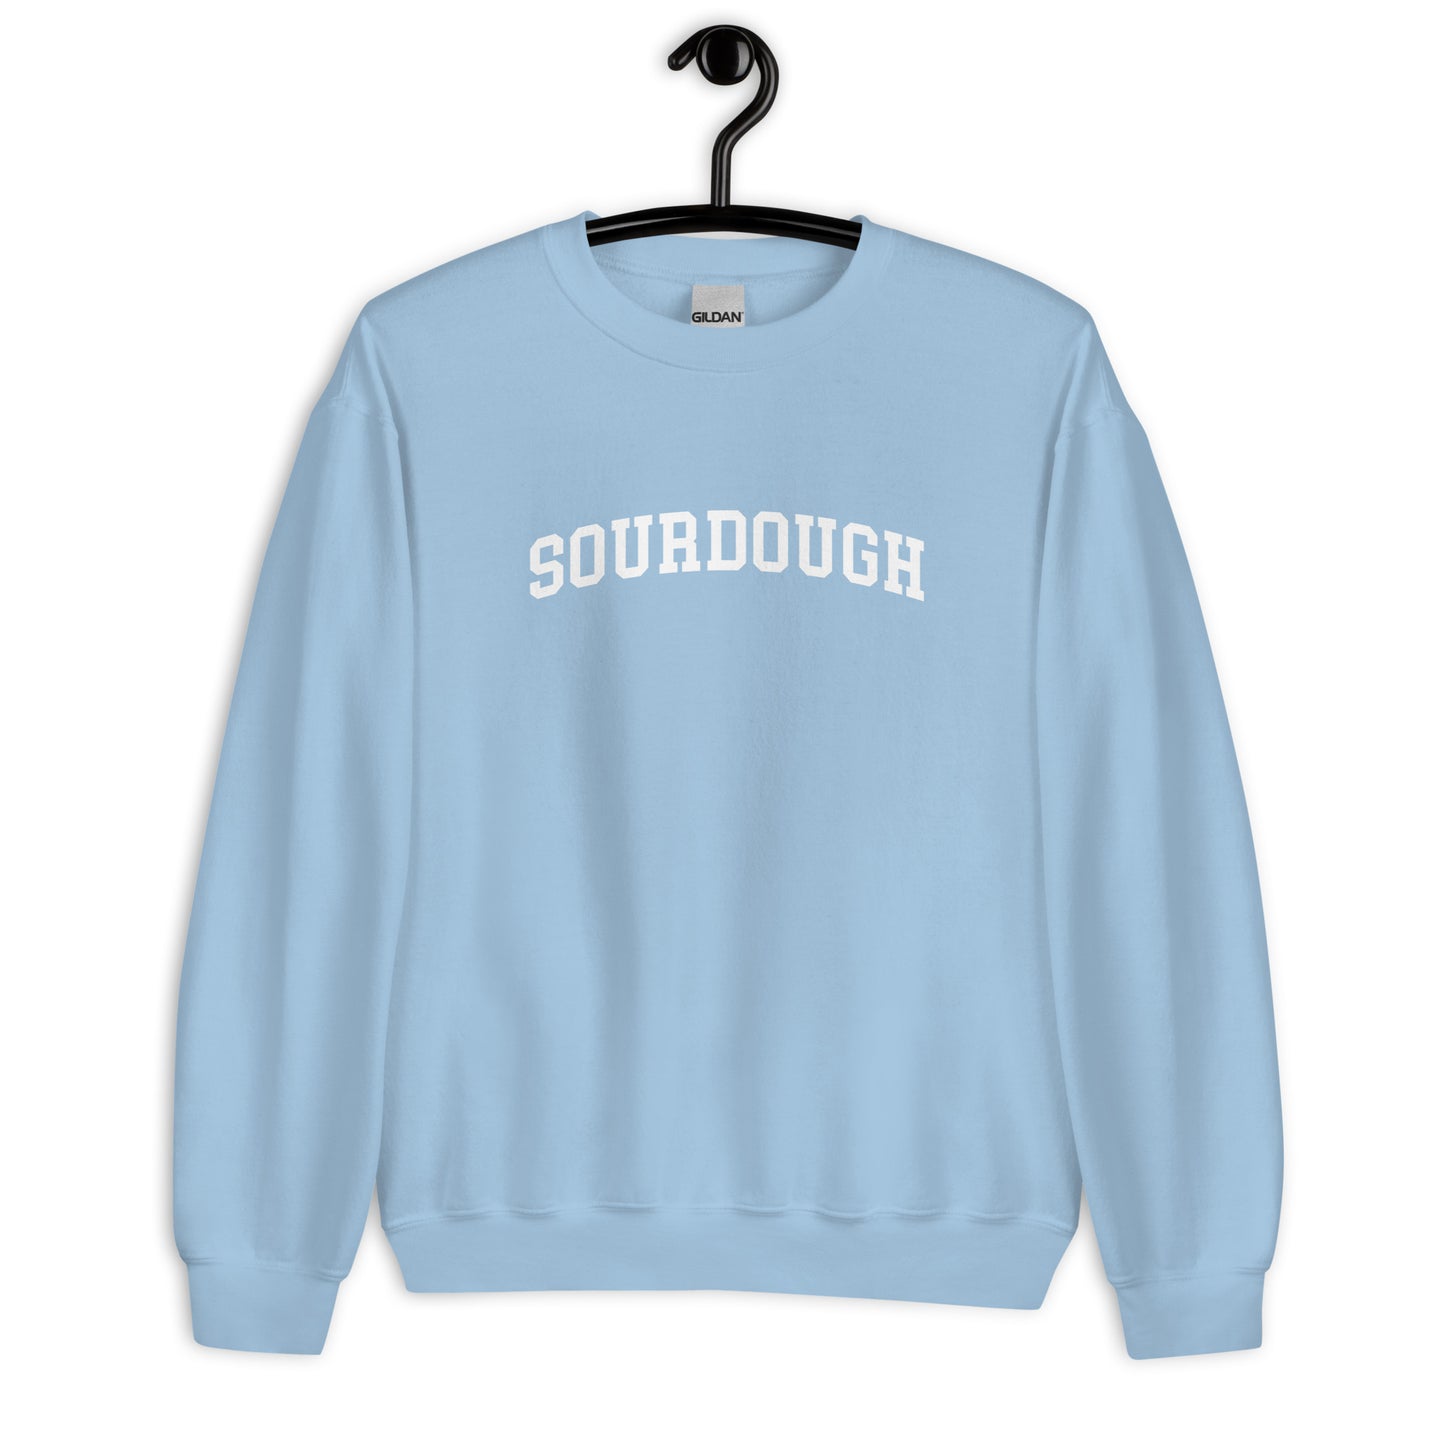 Sourdough Sweatshirt - Arched Font